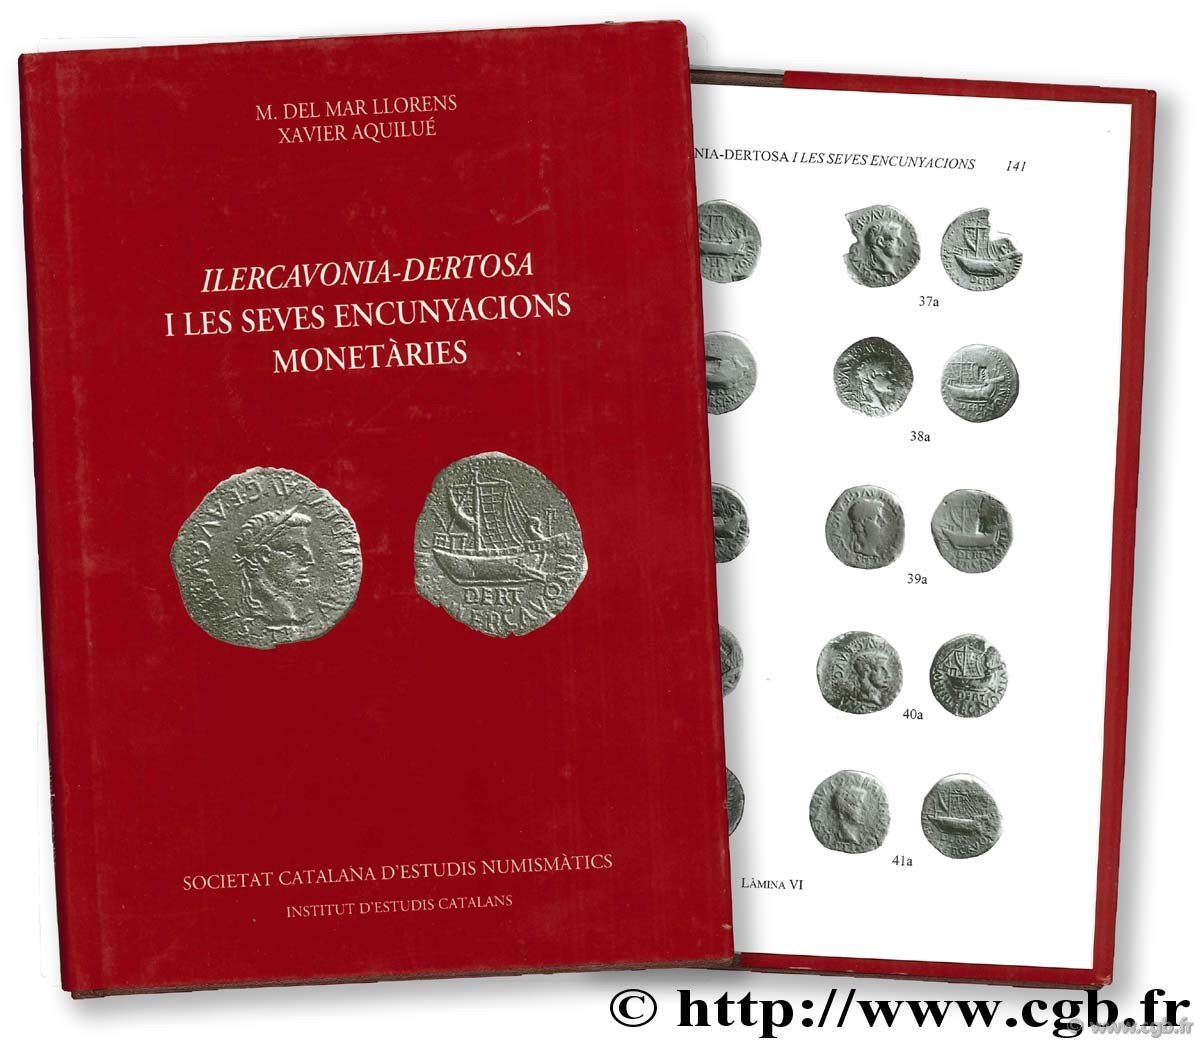 Ilercavonia-Dertosa Iles seves encunyacions monetàries AQUILUE X., DEL MAR LLORENS M. 